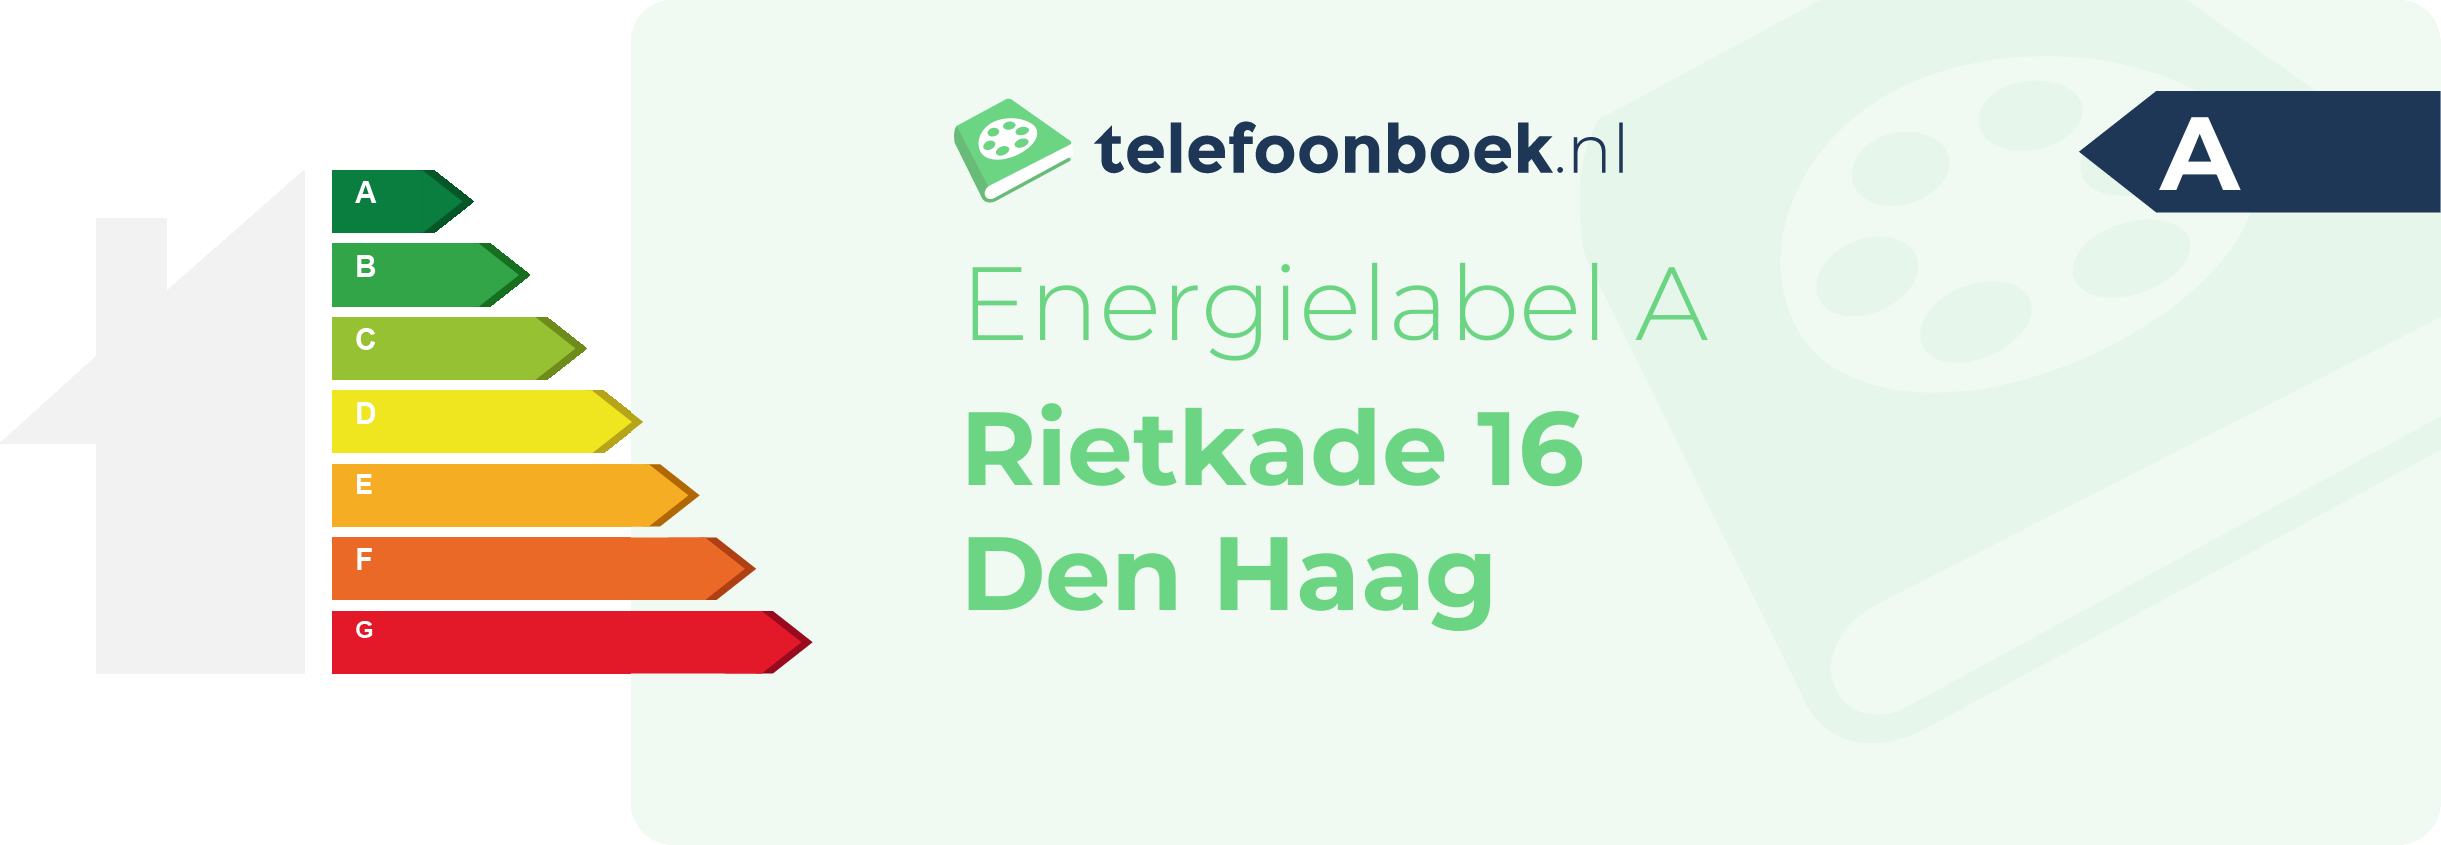 Energielabel Rietkade 16 Den Haag